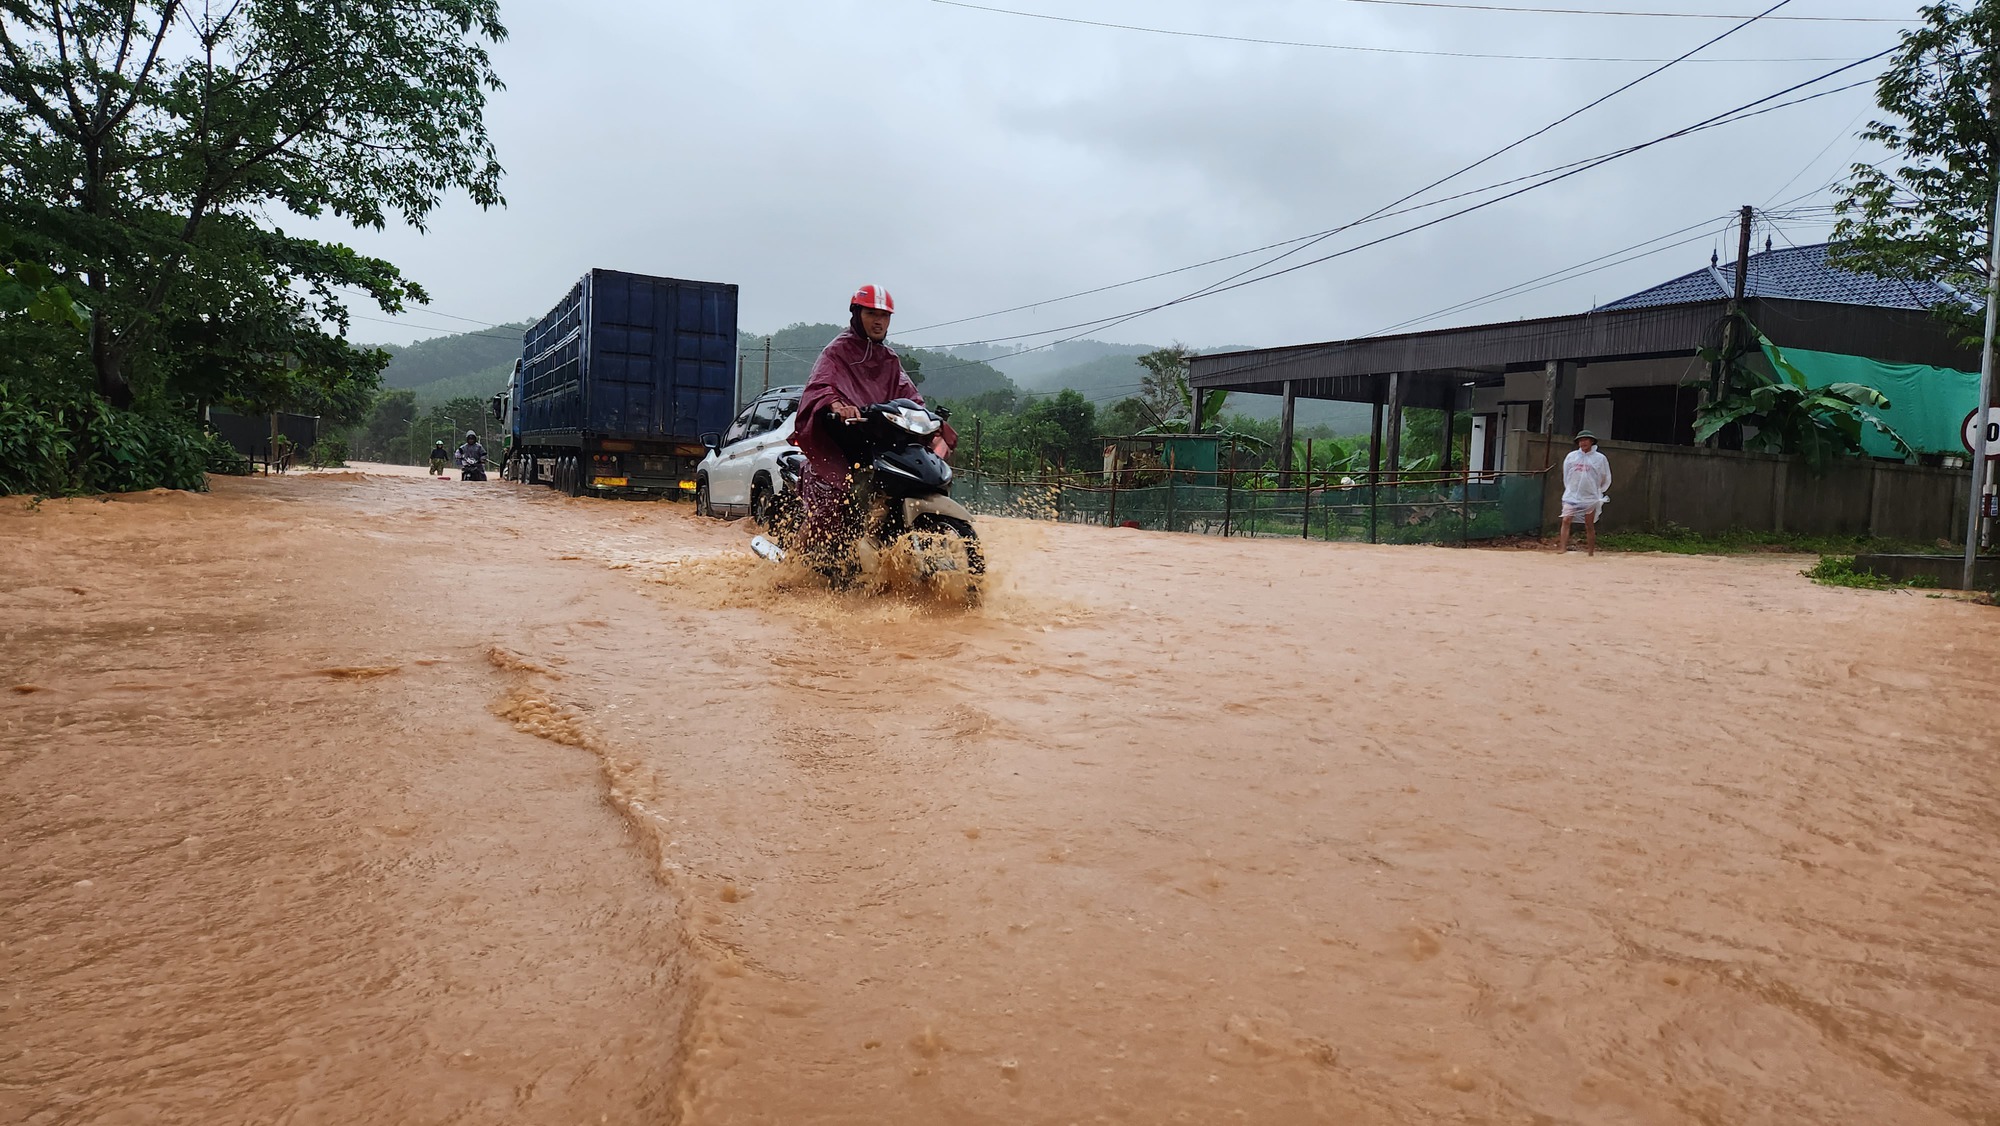 Hà Tĩnh: Quốc lộ 15 A biến 'thành sông' do mưa lớn, nhiều nhà dân ngập sâu - Ảnh 2.